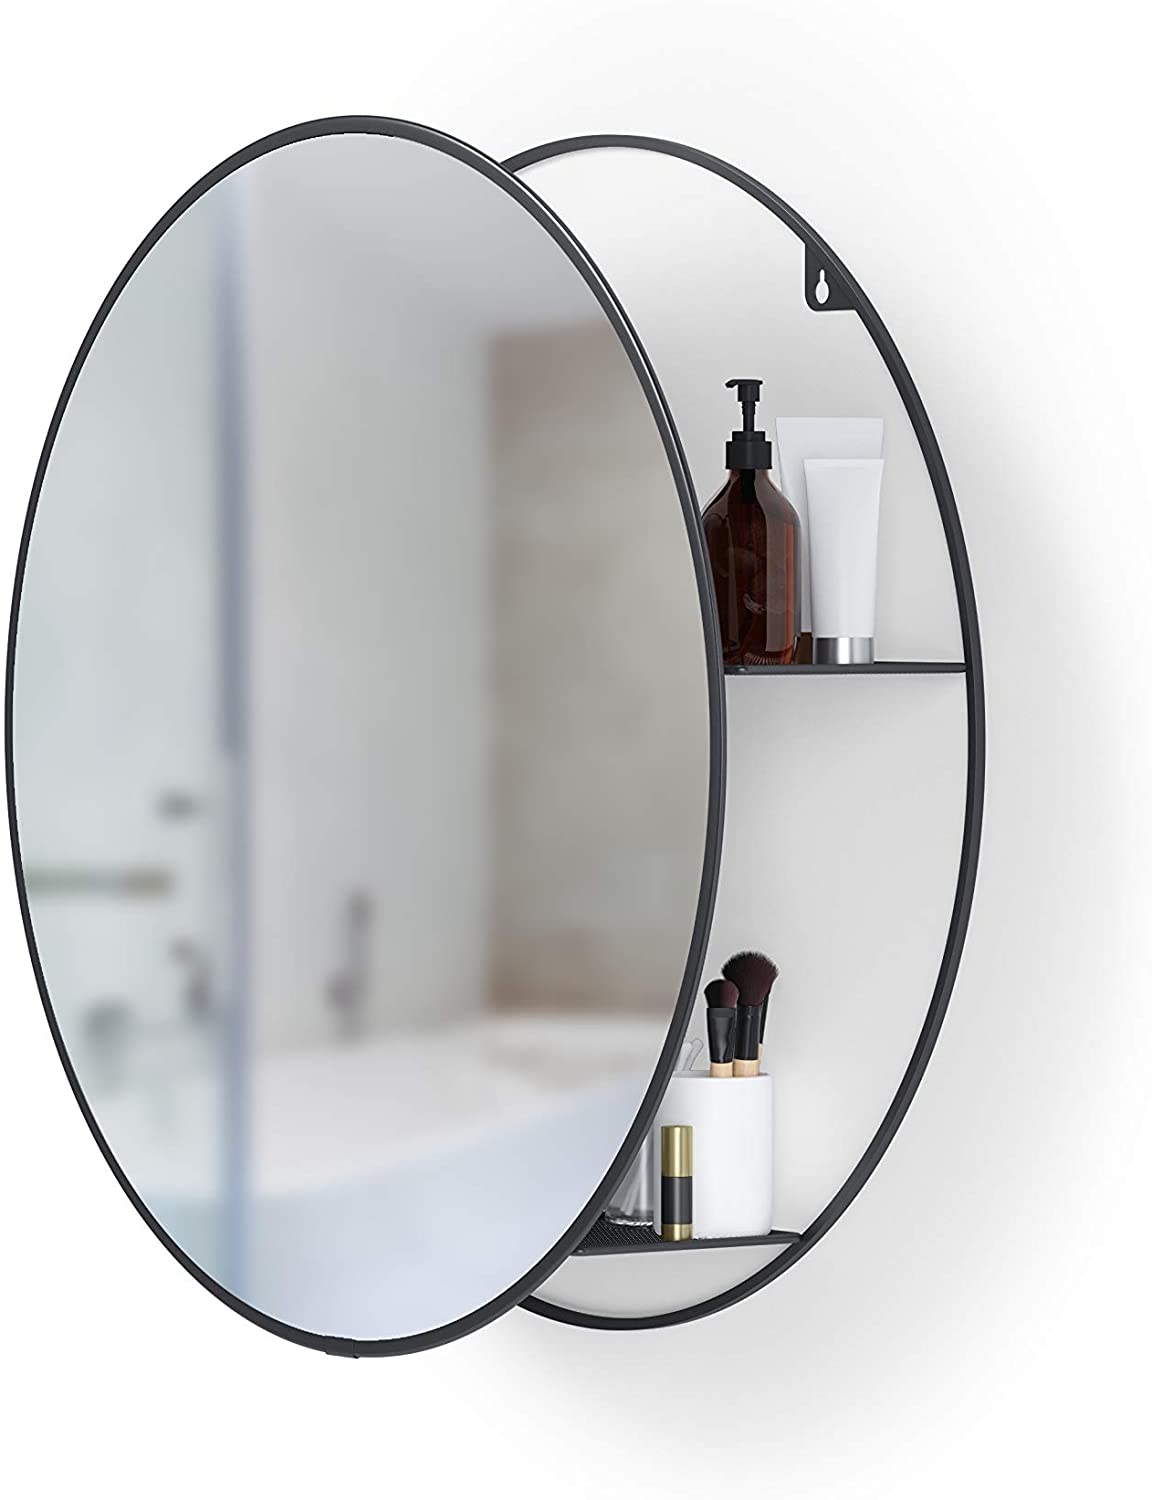 Runder Badezimmerspiegel mit Ablage Schwarz modern Stauraum für kleine Räume